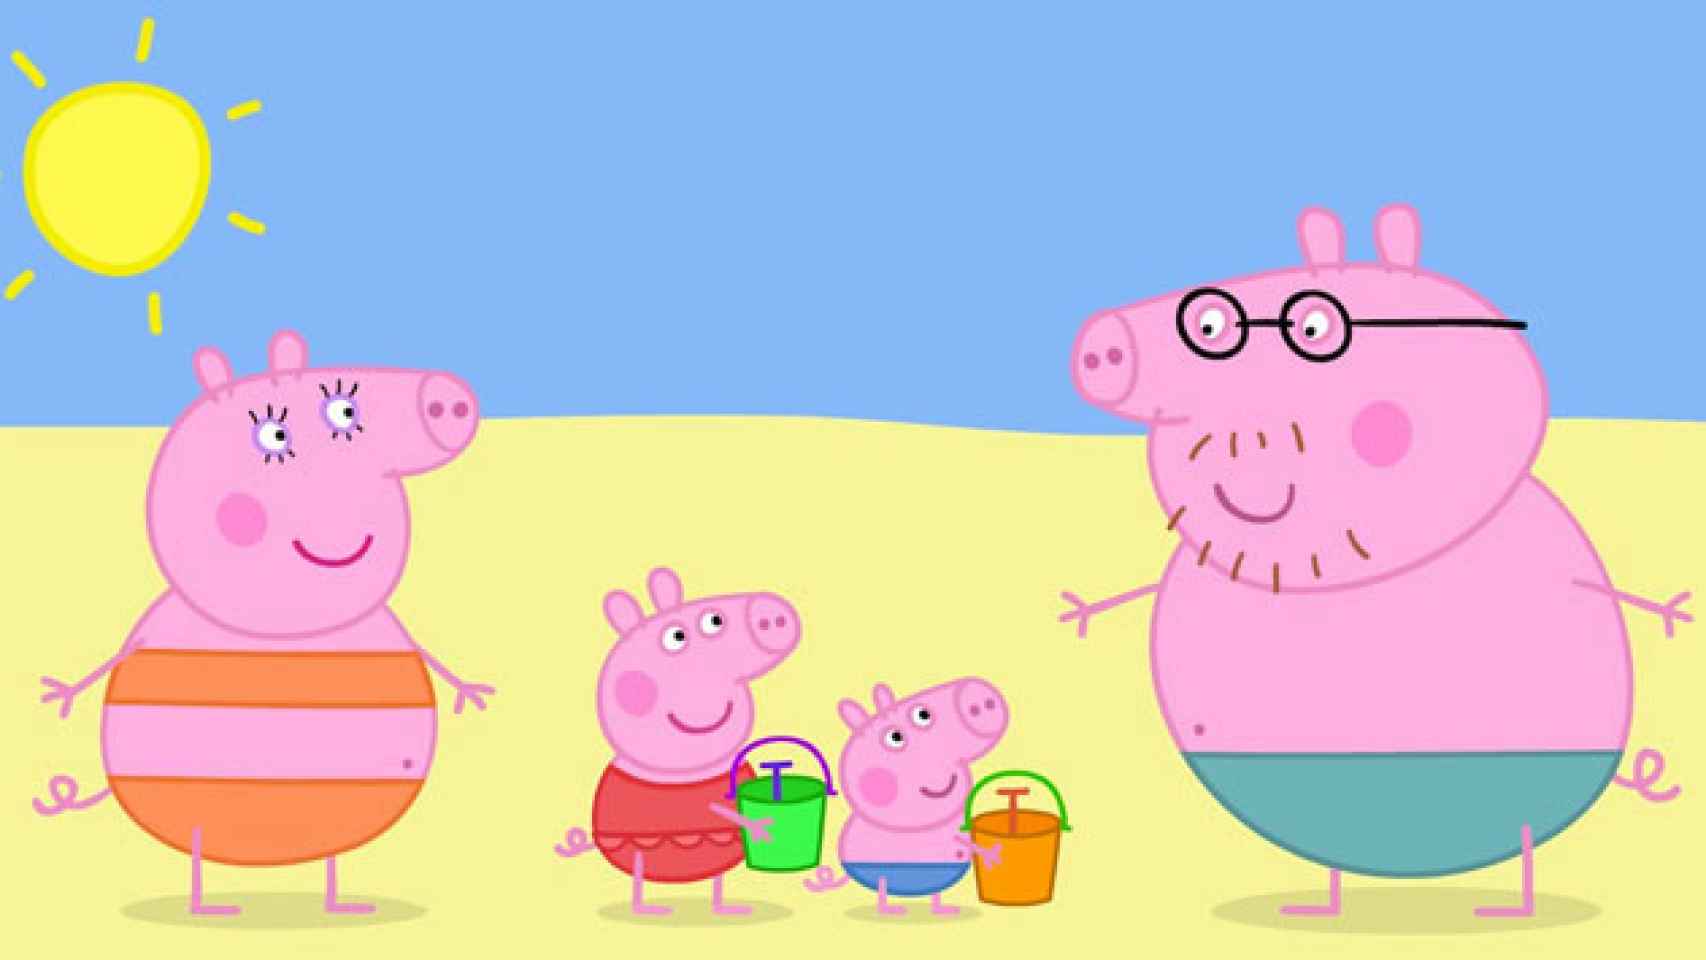 Imagen de los principales personajes de la serie británica 'Peppa Pig'. / CG